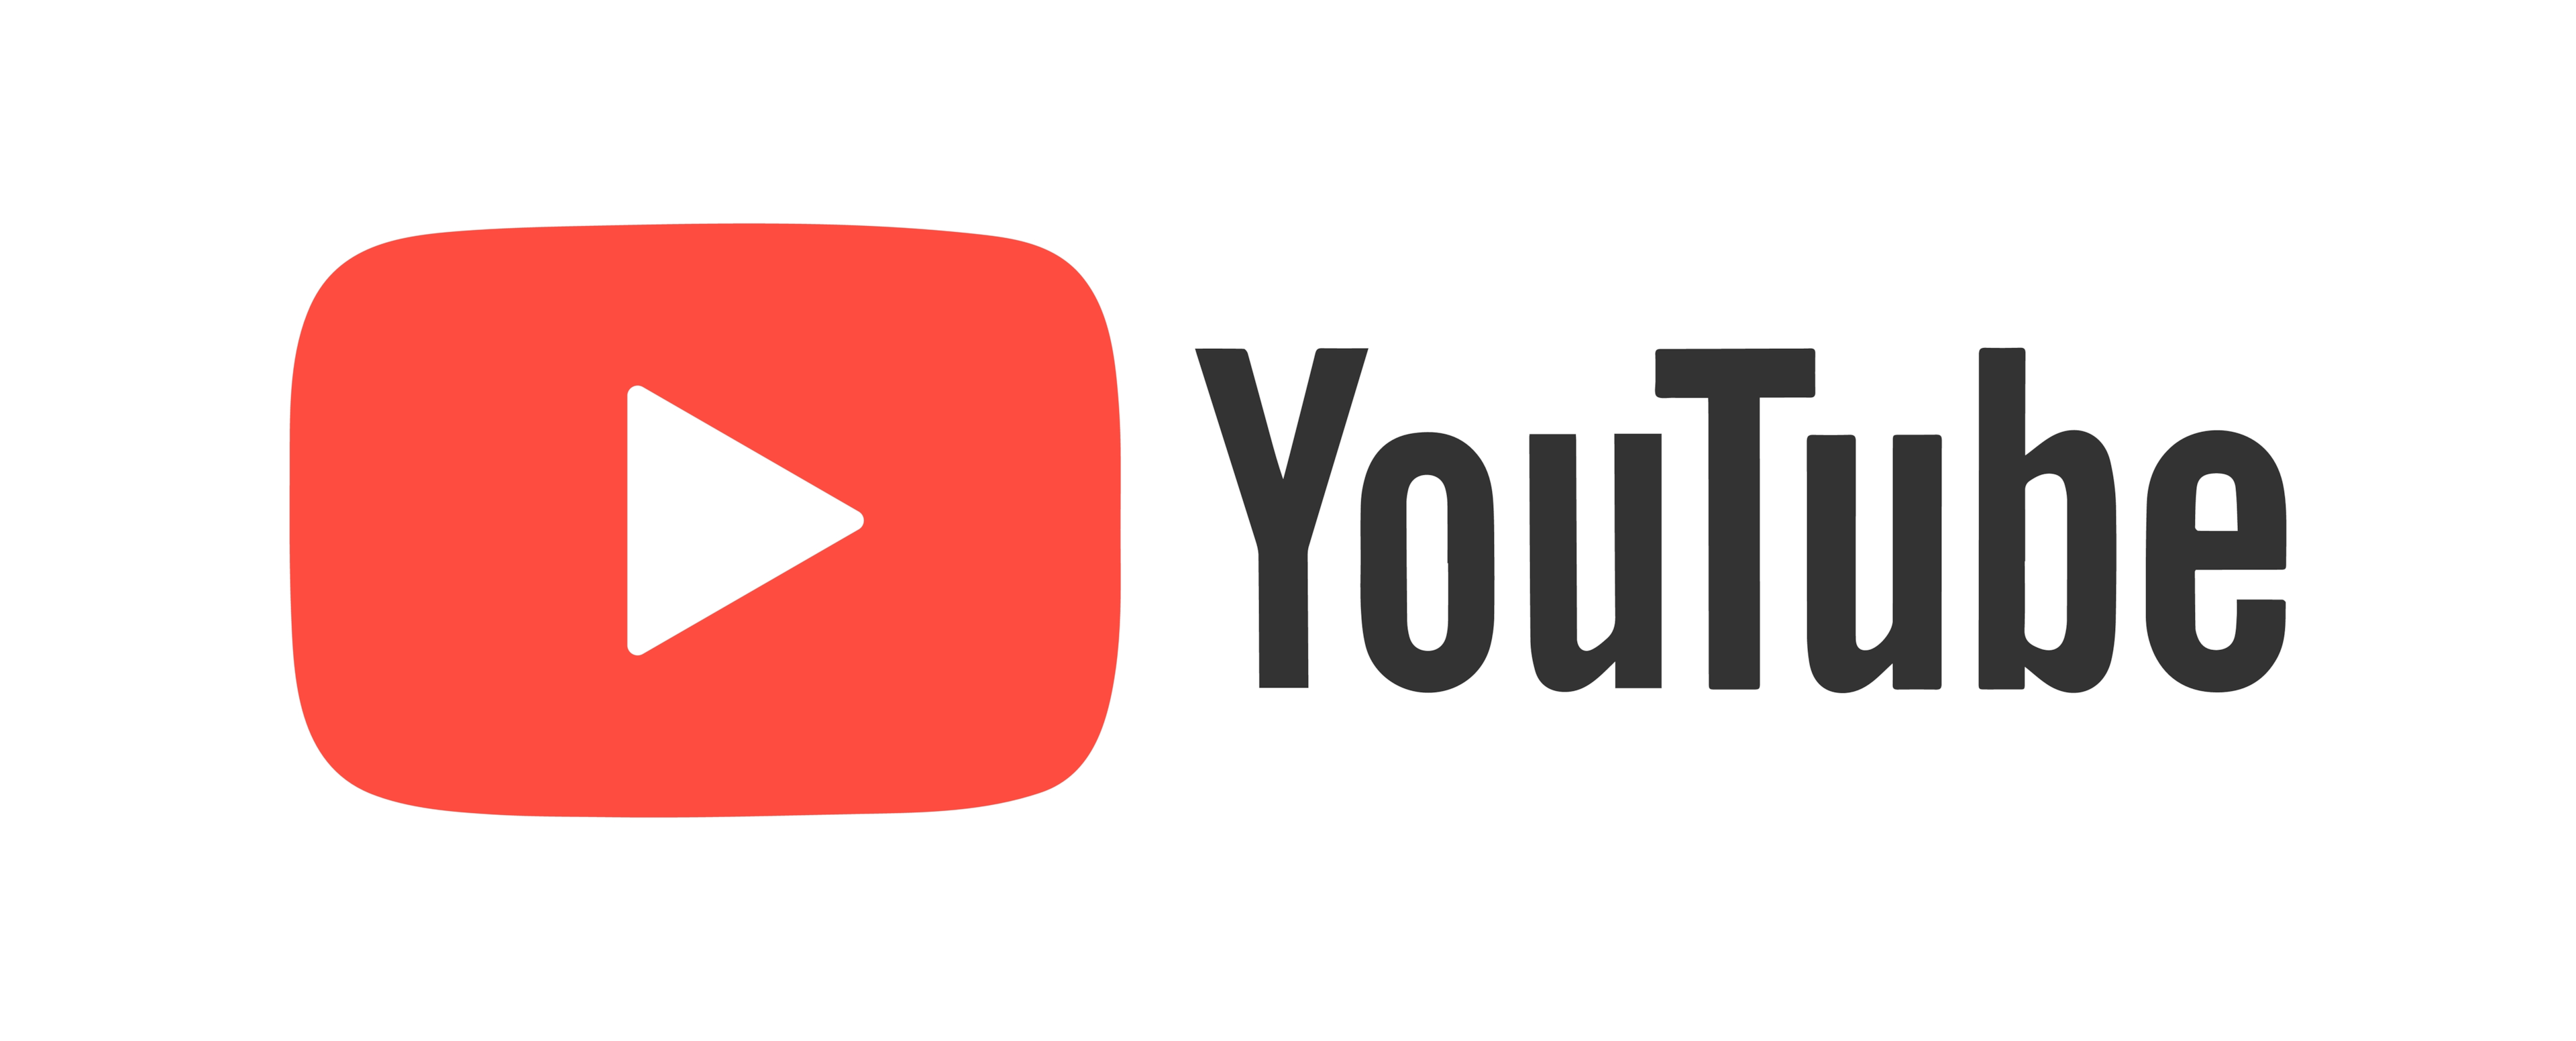 YouTube ist die zweitgrößte Suchmaschine und ein soziales Netzwerk, das sich für den Community-Aufbau eignet. 